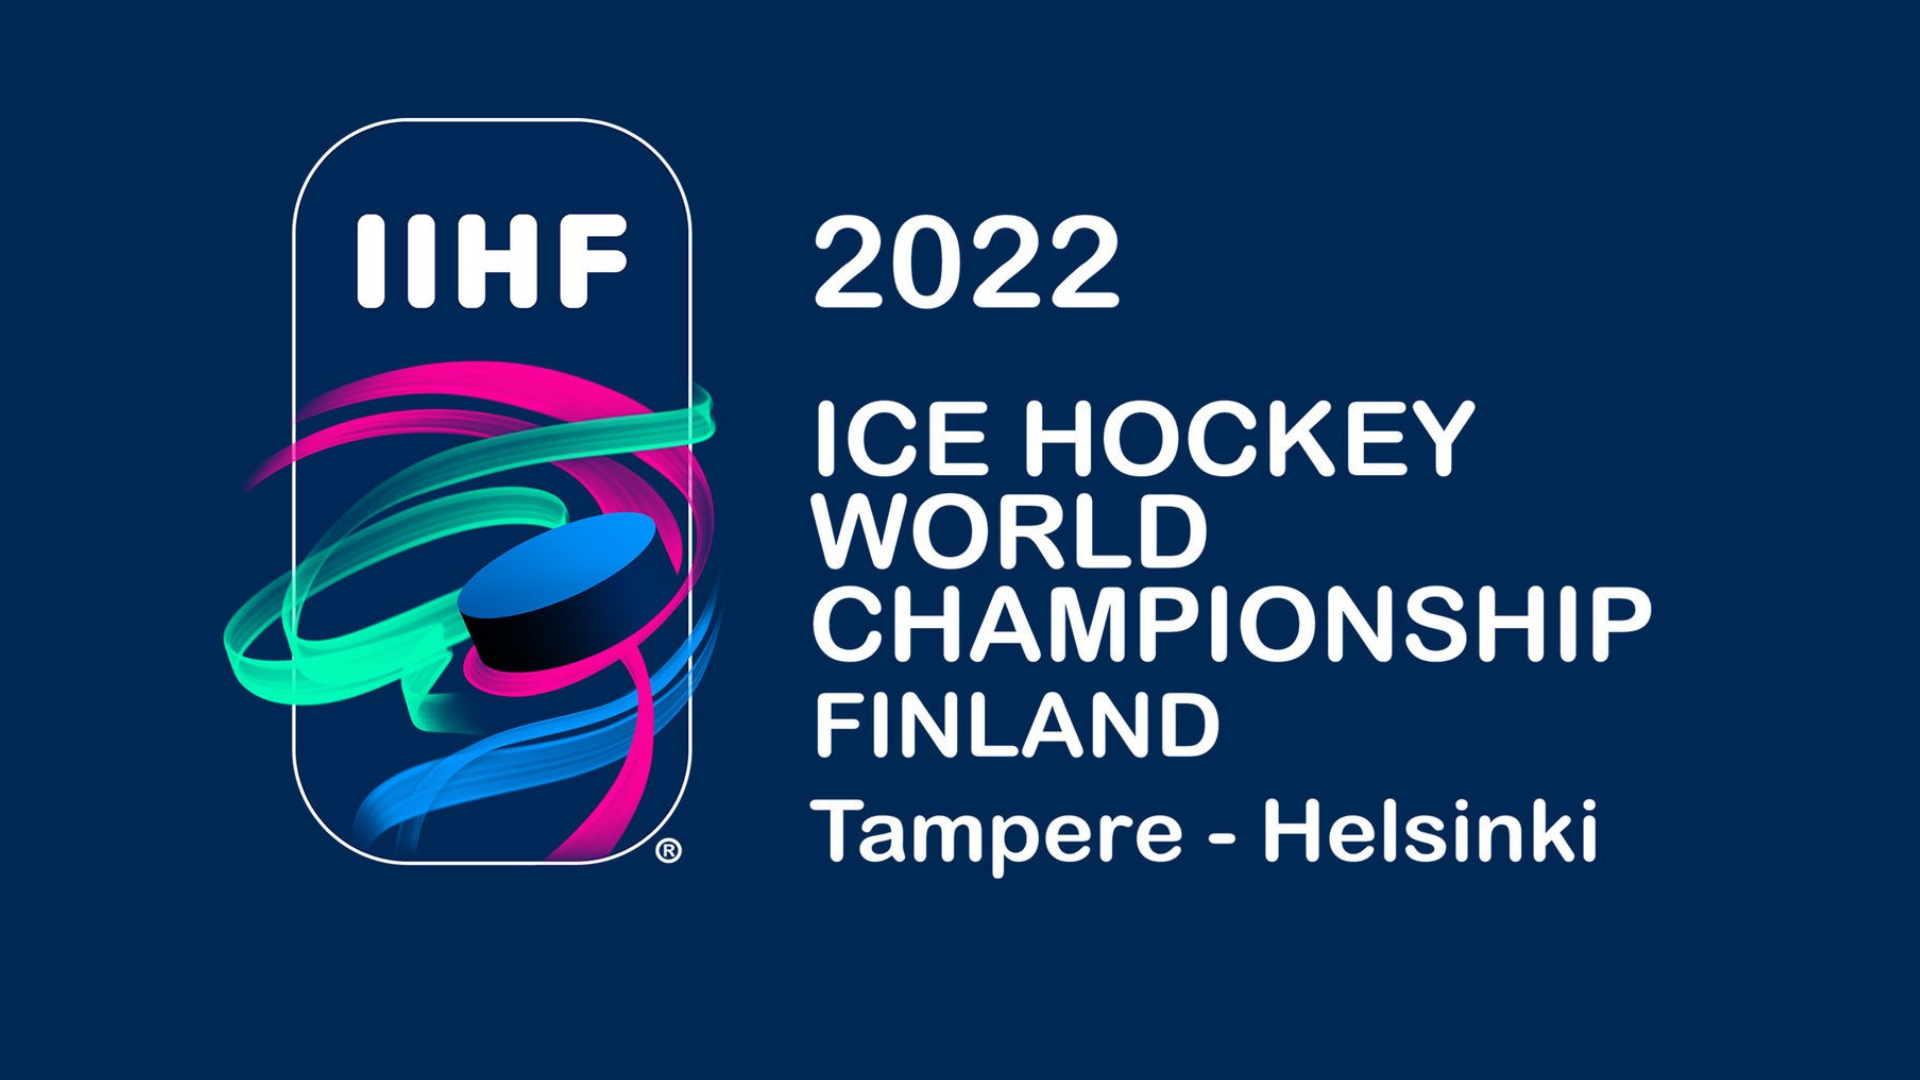 IIHF 2022 predictions